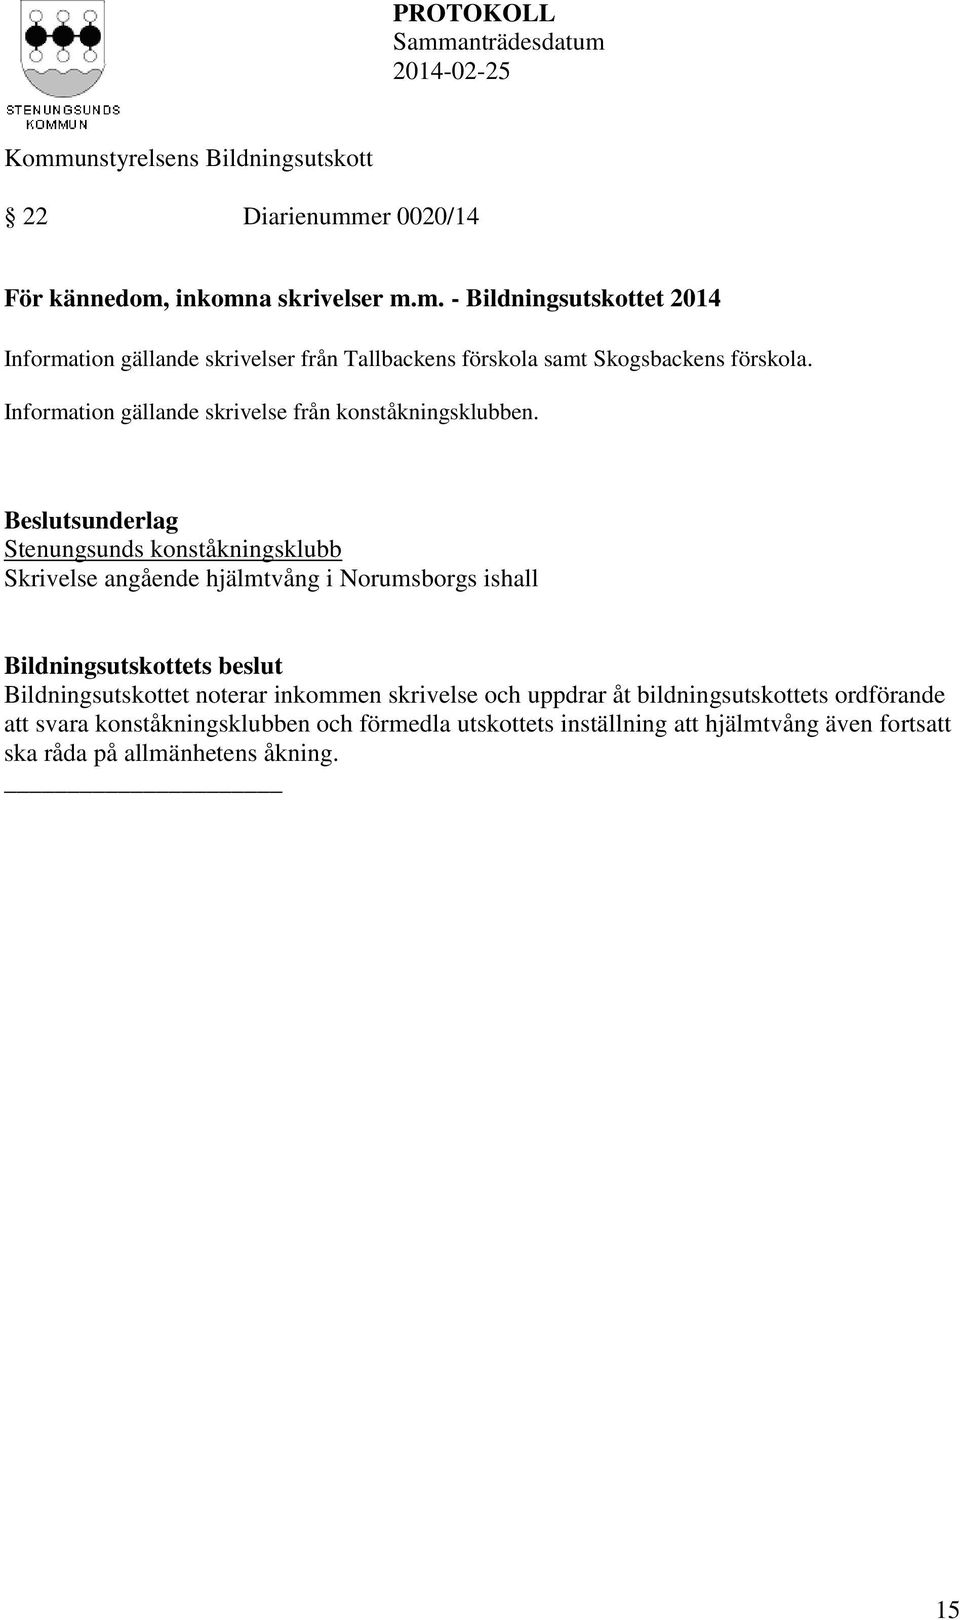 Stenungsunds konståkningsklubb Skrivelse angående hjälmtvång i Norumsborgs ishall Bildningsutskottet noterar inkommen skrivelse och